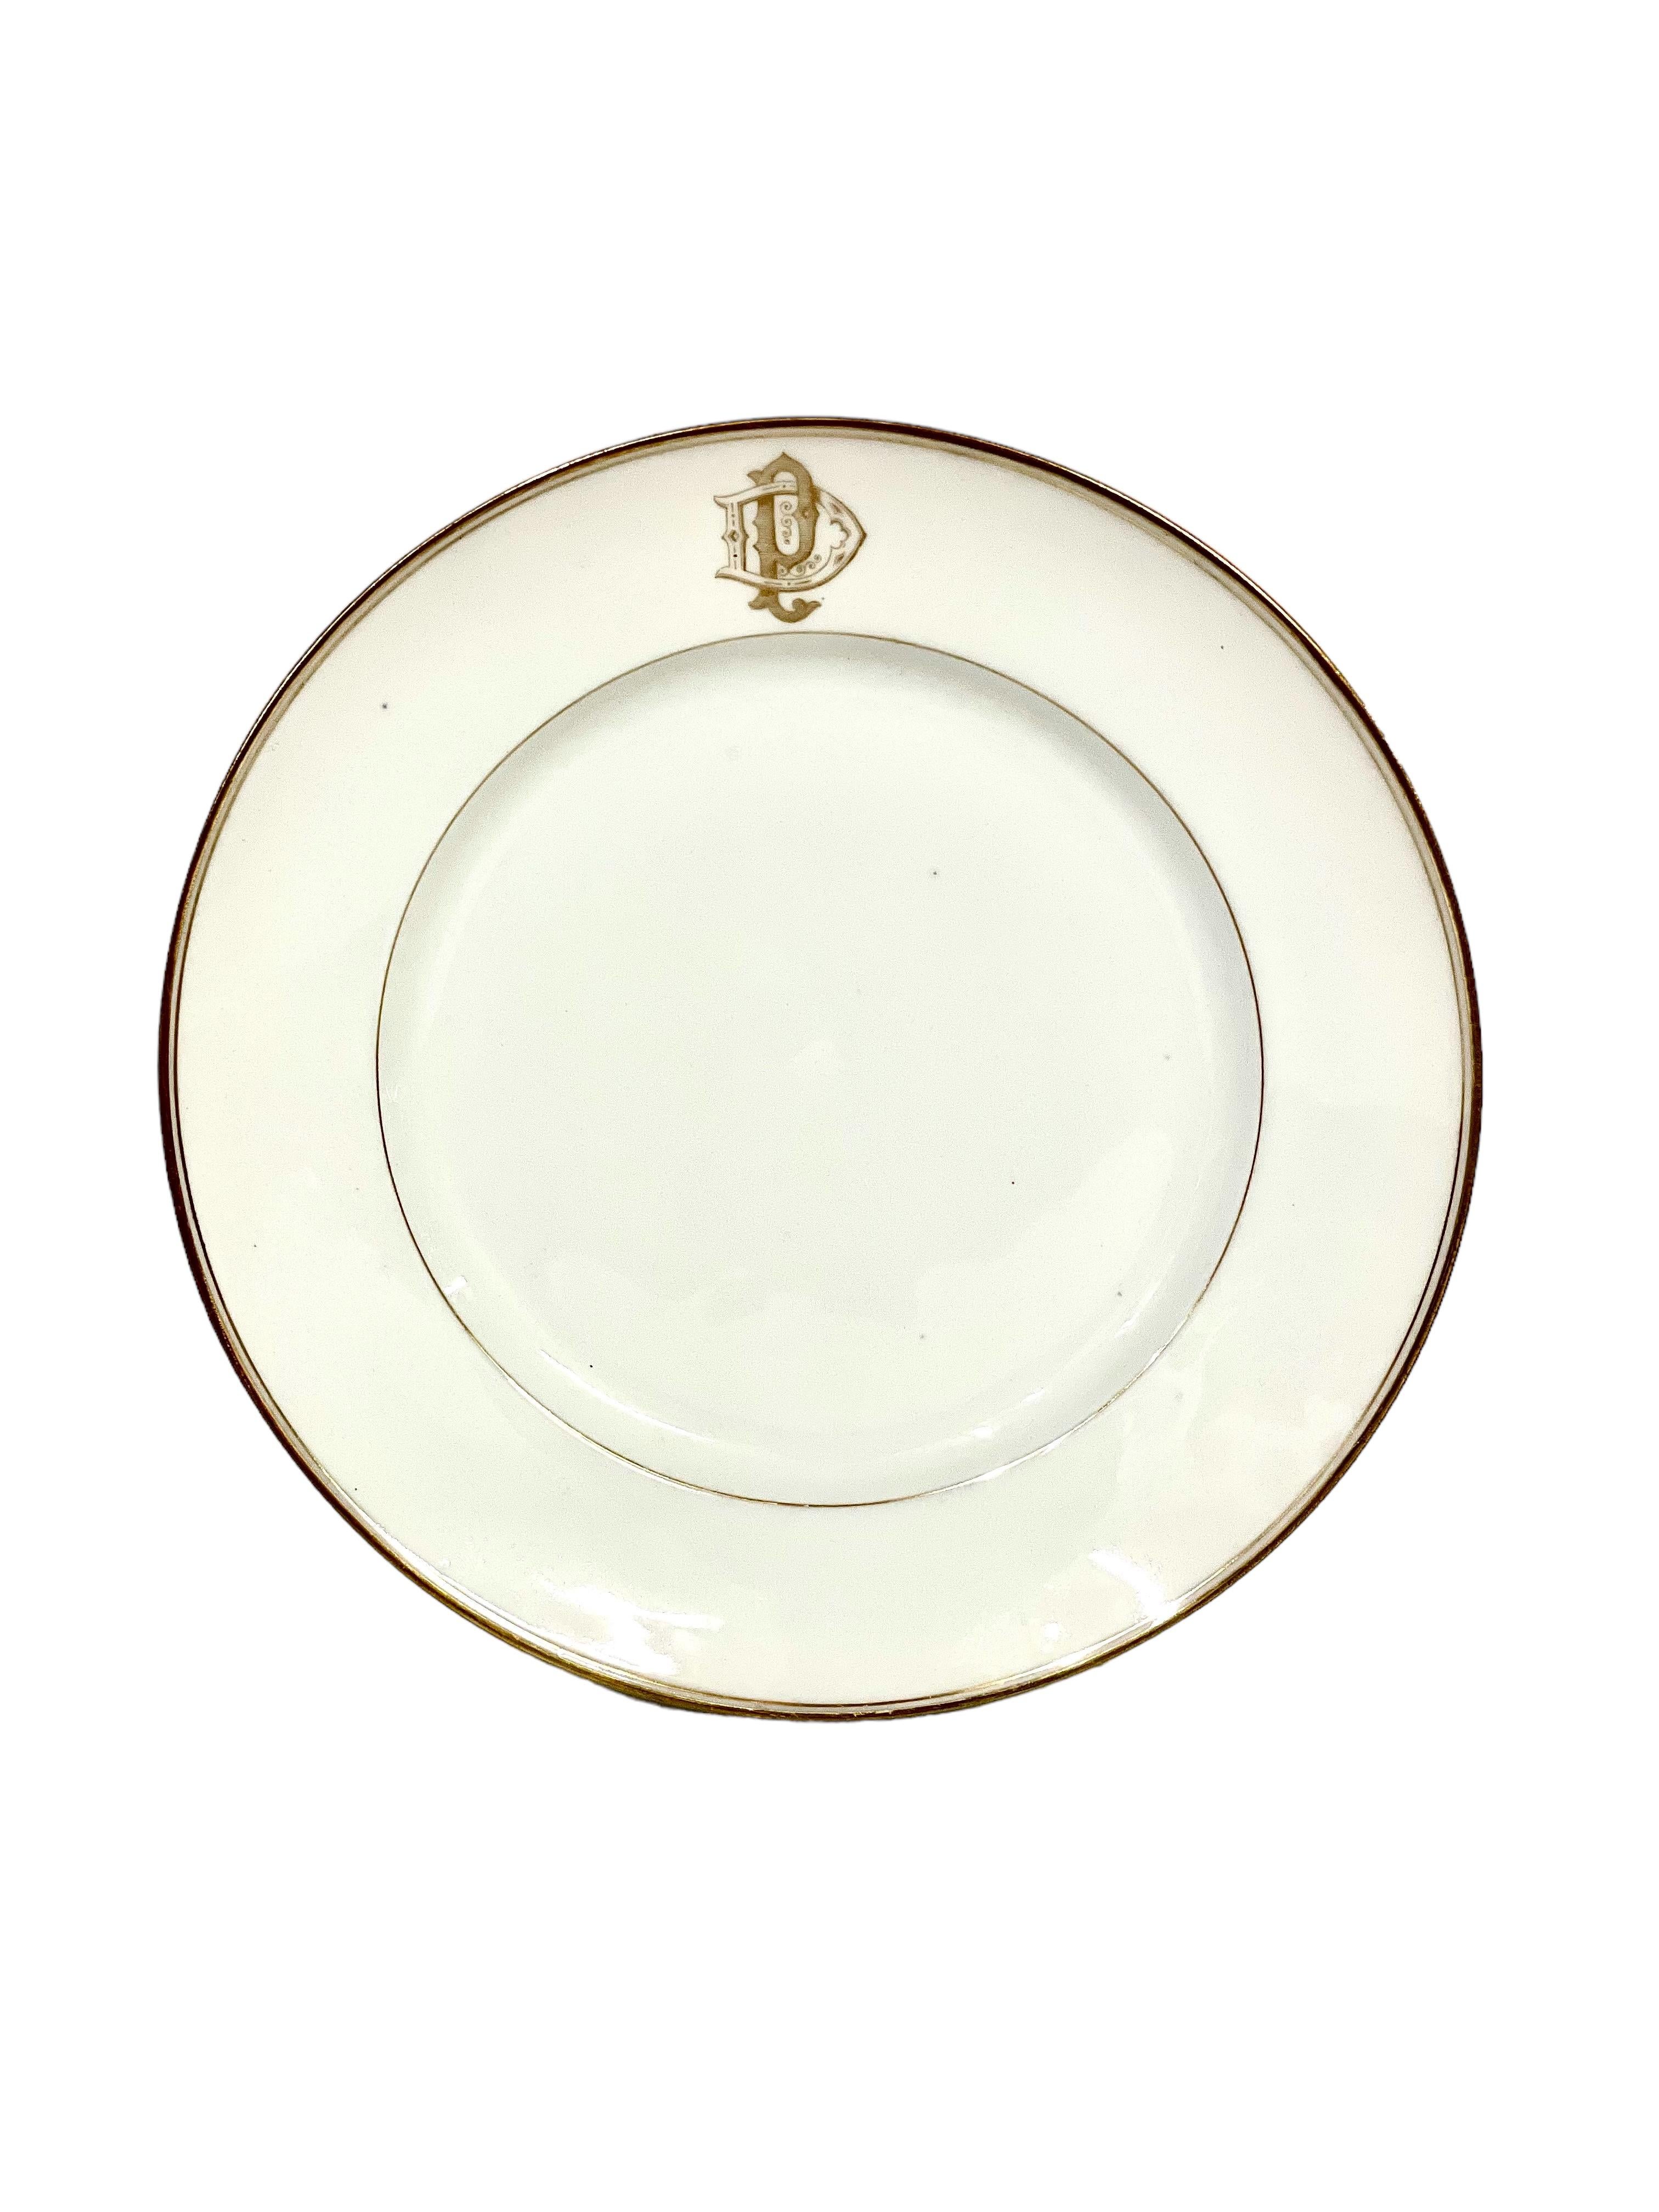 Un ensemble de 12 assiettes à dessert en délicate porcelaine blanche de Limoges, chaque pièce étant bordée d'une fine bordure dorée et portant le monogramme élaboré 